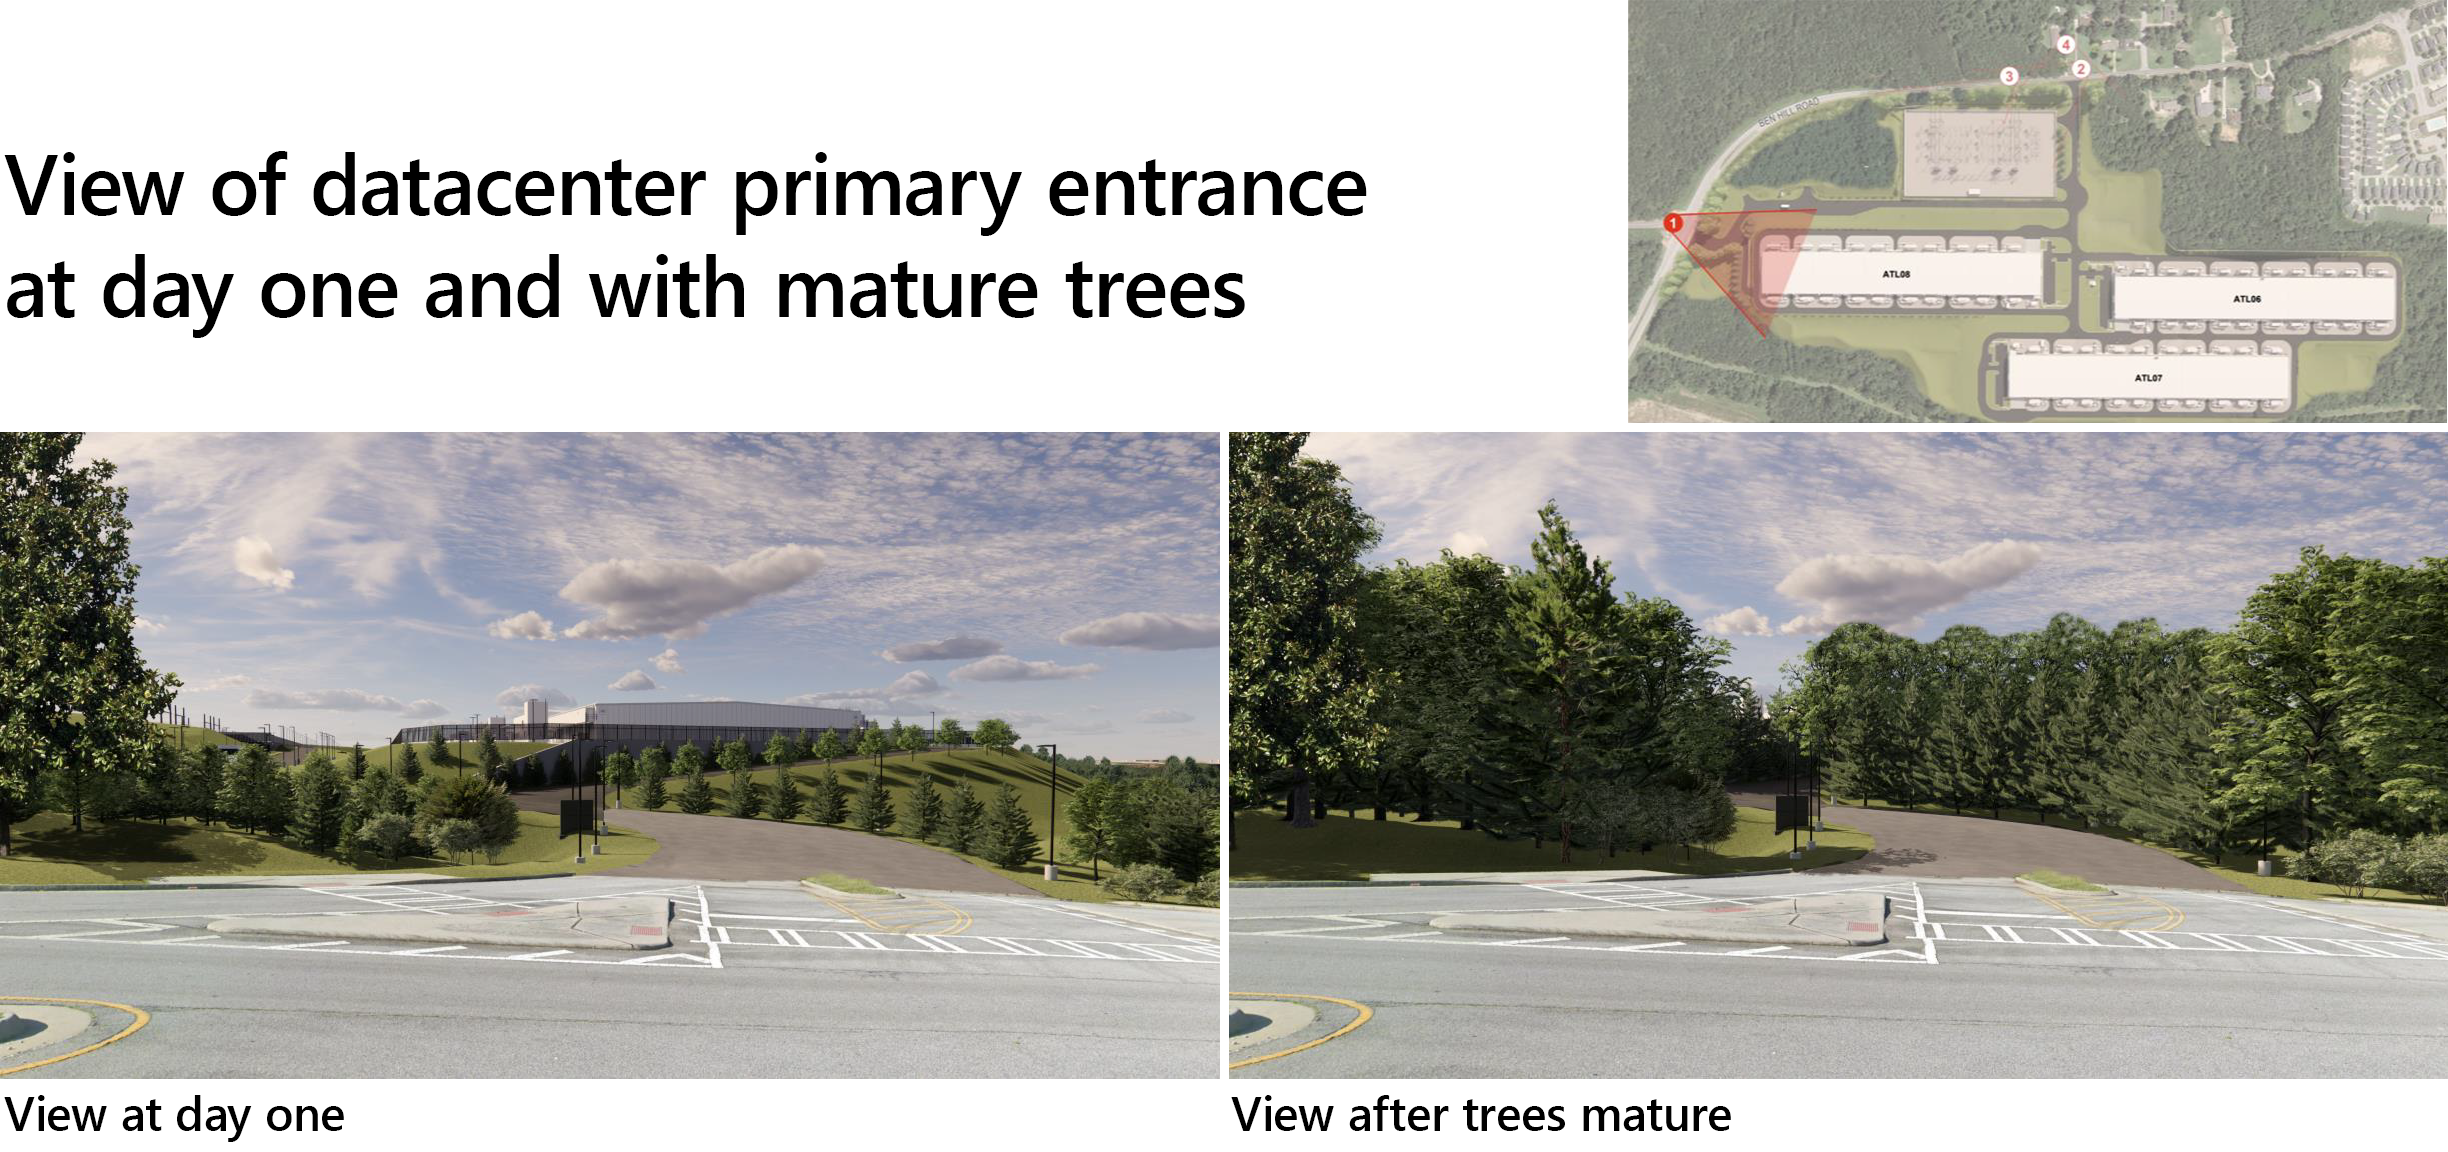 منظر لمدخل مركز البيانات الأساسي في اليوم الأول ومع الأشجار الناضجة